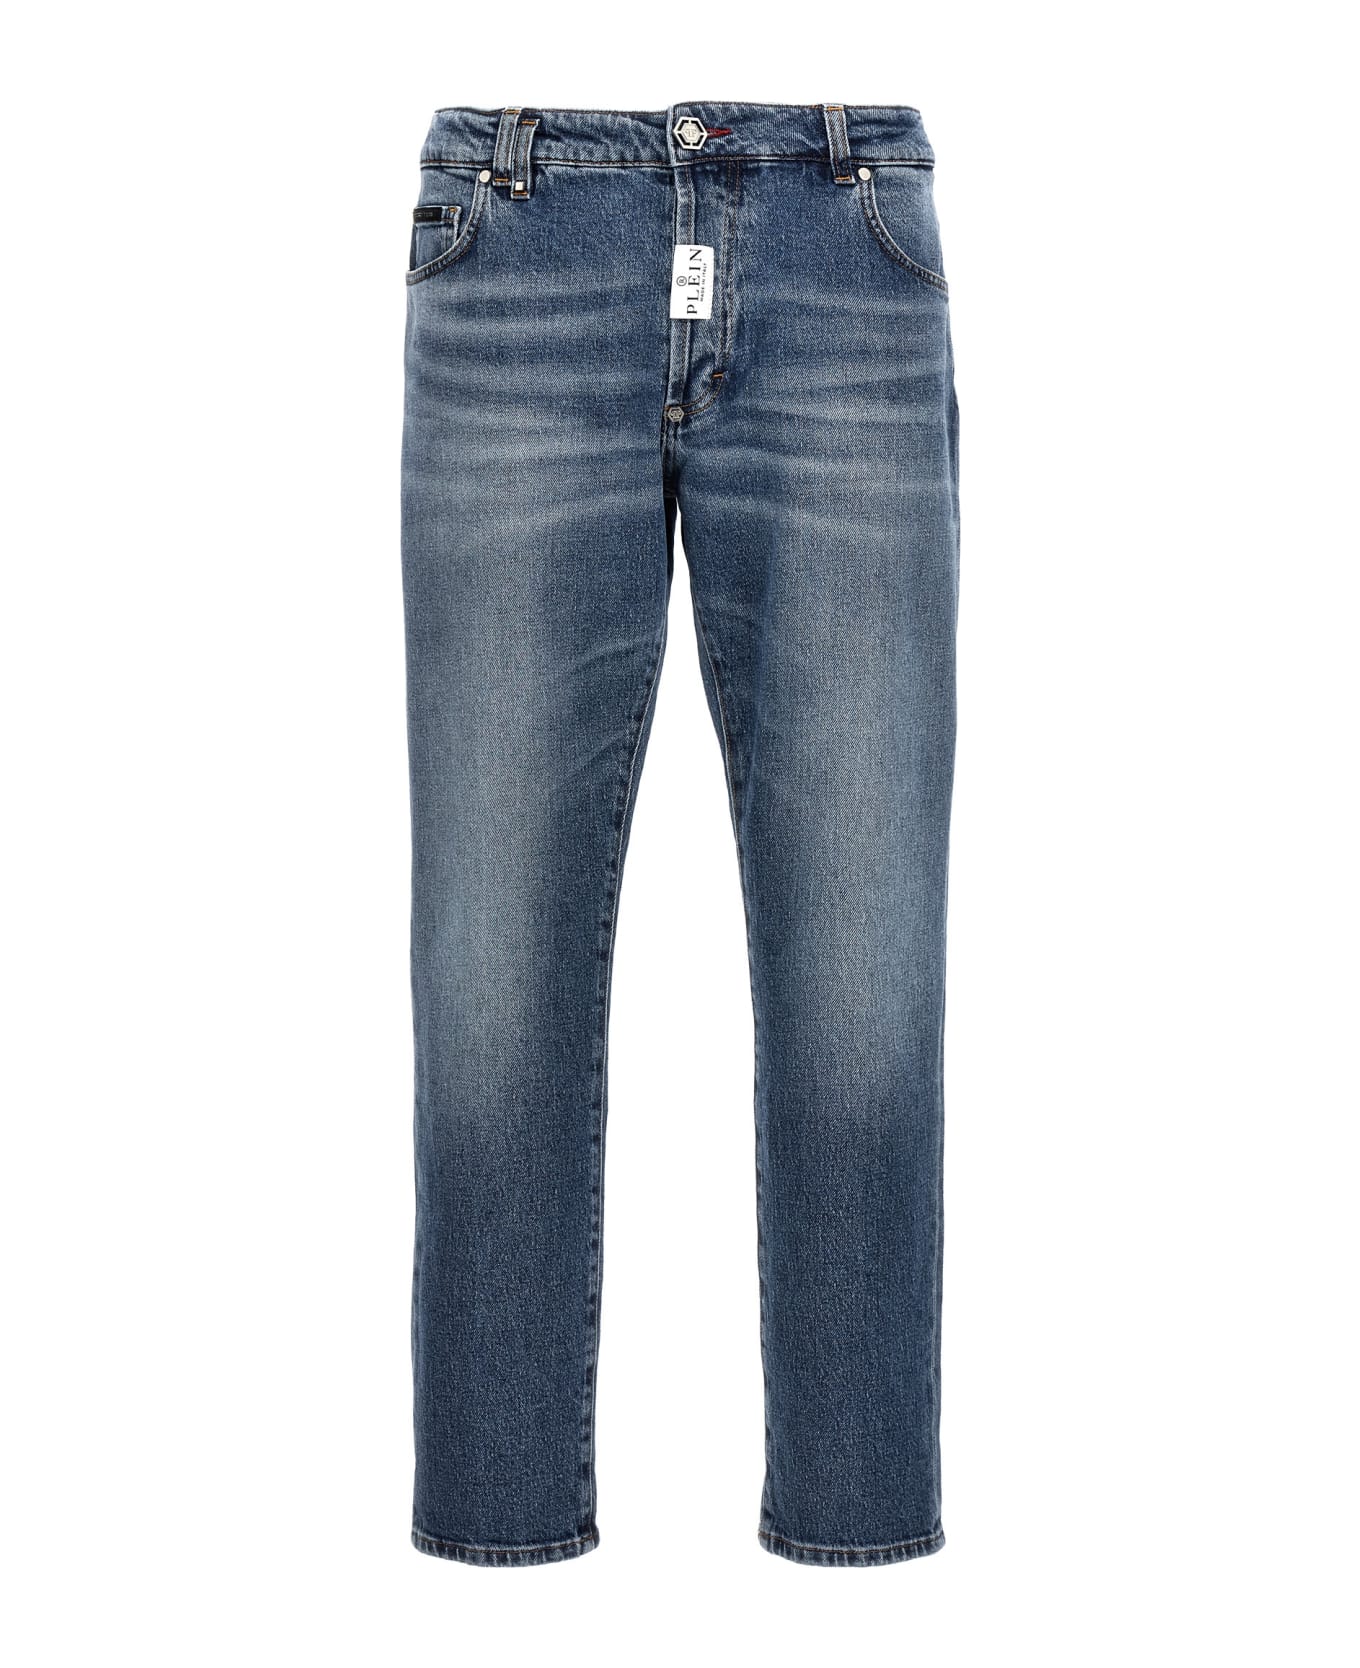 Philipp Plein Denim Jeans - BLUE